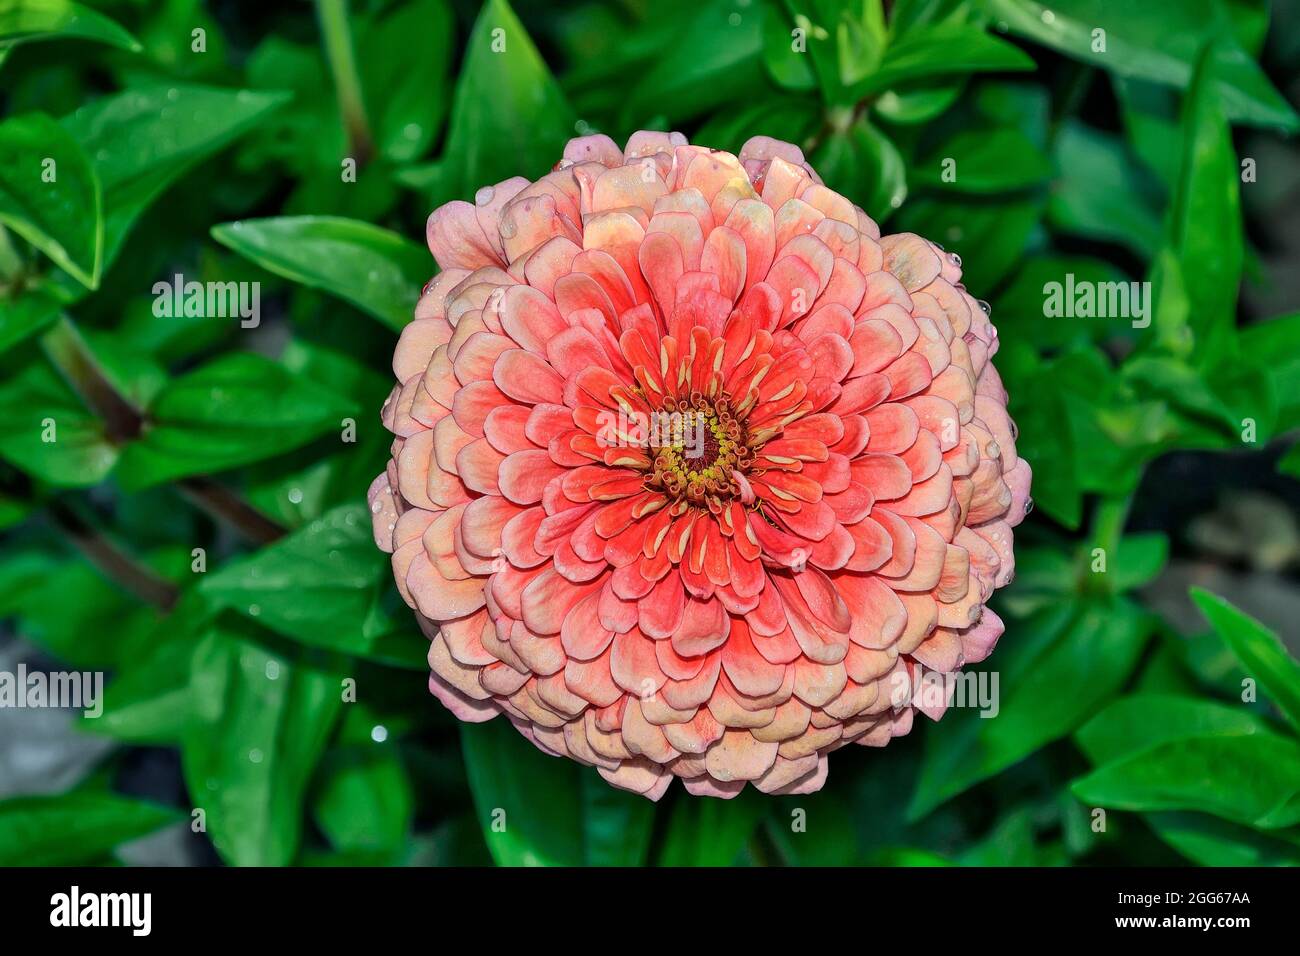 Rosa Zinnia Blume im Morgentau im Garten. Nasse pastellfarbene lachsfarbene Zinnia-Blume auf unscharfem grünem Blatthintergrund. Glänzende Wassertropfen auf g Stockfoto